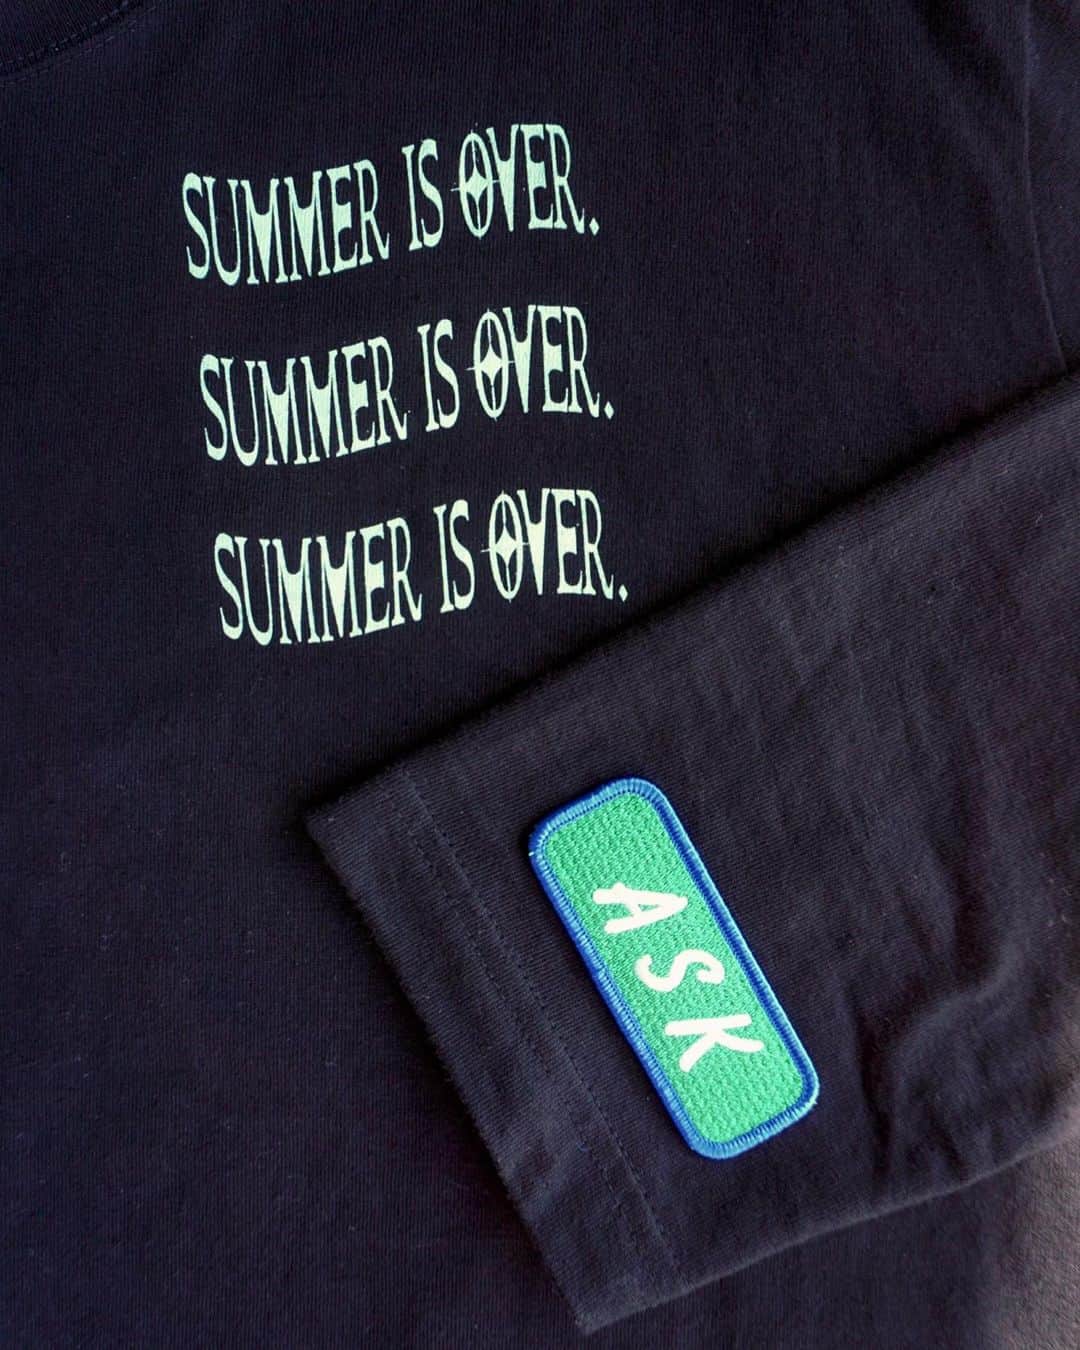 杏沙子さんのインスタグラム写真 - (杏沙子Instagram)「SUMMER IS OVER. 開催記念GOODS❸ ㅤㅤㅤㅤㅤㅤㅤㅤㅤㅤㅤㅤㅤ 🧵あさこいぬ / ASK刺繍ワッペン🧵 ㅤㅤㅤㅤㅤㅤㅤㅤㅤㅤㅤㅤㅤ 10/14(土)開催のワンマンライブ 「SUMMER IS OVER.」で発売する NEW GOODSその3🛍 ㅤㅤㅤㅤㅤㅤㅤㅤㅤㅤㅤㅤㅤ アイロンであっためるとくっついて お洋服やトートなどの布製品を 自分好みにアレンジできちゃうワッペンが大好きで…… ㅤㅤㅤㅤㅤㅤㅤㅤㅤㅤㅤㅤㅤ ついに作ってしまいました… しかも あさこいぬとASKマークの2種類🤦🏼‍♂️  ㅤㅤㅤㅤㅤㅤㅤㅤㅤㅤㅤㅤㅤ今回販売するSUMMER IS OVER.ロンTや お手持ちのお洋服の袖口や二の腕辺り、 裾や首後ろなどに付けたら ワンポイントがかわいい あなたオリジナルのお洋服にグレードアップ👏🏻 ㅤㅤㅤㅤㅤㅤㅤㅤㅤㅤㅤㅤㅤ 布製のトートやポーチなどにも もちろんつけられるよ🙆🏻‍♂️  わたしのスマホだとあさこいぬなら シリコンのクリアスマホケースの間にも挟めた… かわいい🐶 ㅤㅤㅤㅤㅤㅤㅤㅤㅤㅤㅤㅤㅤ ㅤㅤㅤㅤㅤㅤㅤㅤㅤㅤㅤㅤㅤ刺繍ワッペンということで 原価スレスレですが わりとお高くなってしまったごめん……… でもぜひゲットしてほしい〜🥺 ㅤㅤㅤㅤㅤㅤㅤㅤㅤㅤㅤㅤㅤ 【price】各¥800 ㅤㅤㅤㅤㅤㅤㅤㅤㅤㅤㅤㅤㅤ designed by 杏沙子＆やさいパック photo by 杏沙子 ㅤㅤㅤㅤㅤㅤㅤㅤㅤㅤㅤㅤㅤ ーーーーーーーーーーーーー ワッペンの取り付け方💭 ①アイロンはドライ・高温に設定してください。 綿製のあて布をご用意ください。 アイロン台は固く平らな物を利用してください。 ②ワッペンの上に当て布をして上から約20秒間、強くプレスしてください。 ③圧着度を高める為に裏からもアイロンを約15秒間あててください。 ④圧着後、平らな所に置いて冷まして下さい。 冷めるまで動かさないでください。 ㅤㅤㅤㅤㅤㅤㅤㅤㅤㅤㅤㅤㅤ ※時間の経過や使用状況により取れてくる可能性もあります。熱圧着シートでとめた後、縫いつけでの取り付けが安心です。」10月13日 18時22分 - asako.ssw